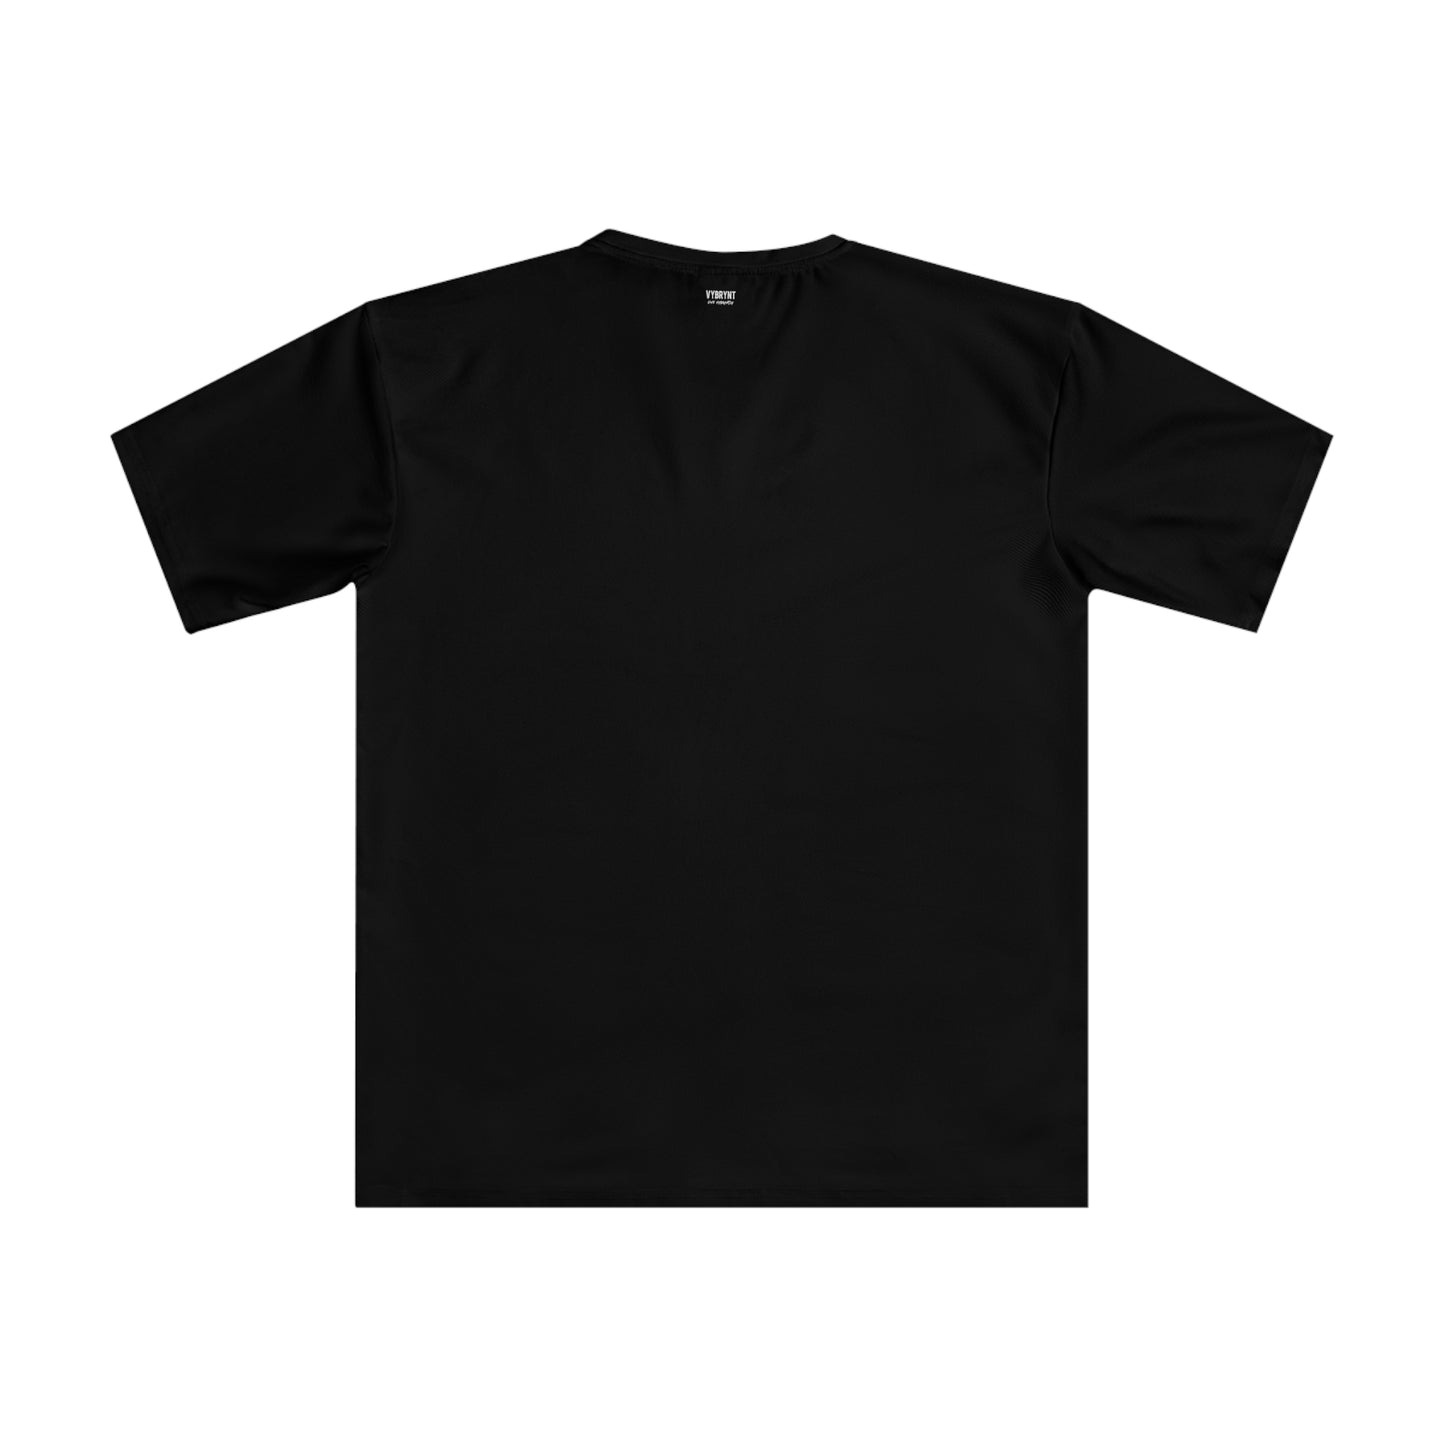 Harlem 125th St Men's Black T-shirt